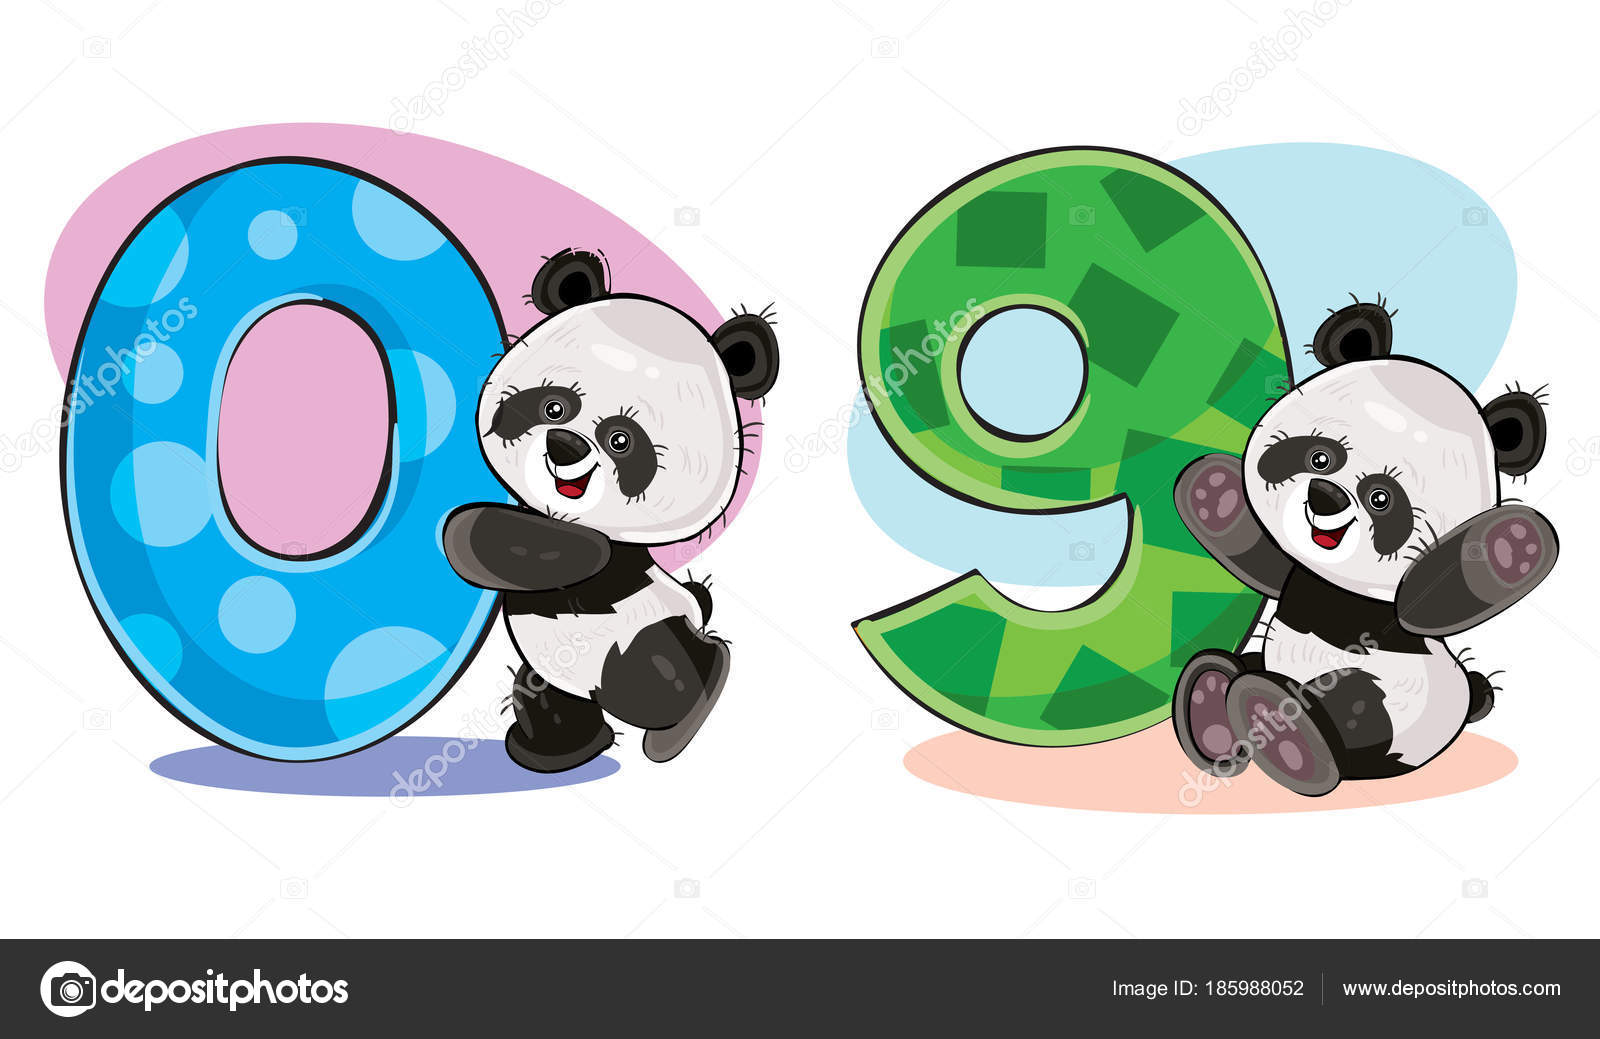 Cara de urso panda bonito. olhar amoroso. personagem de desenho animado.  ilustração.